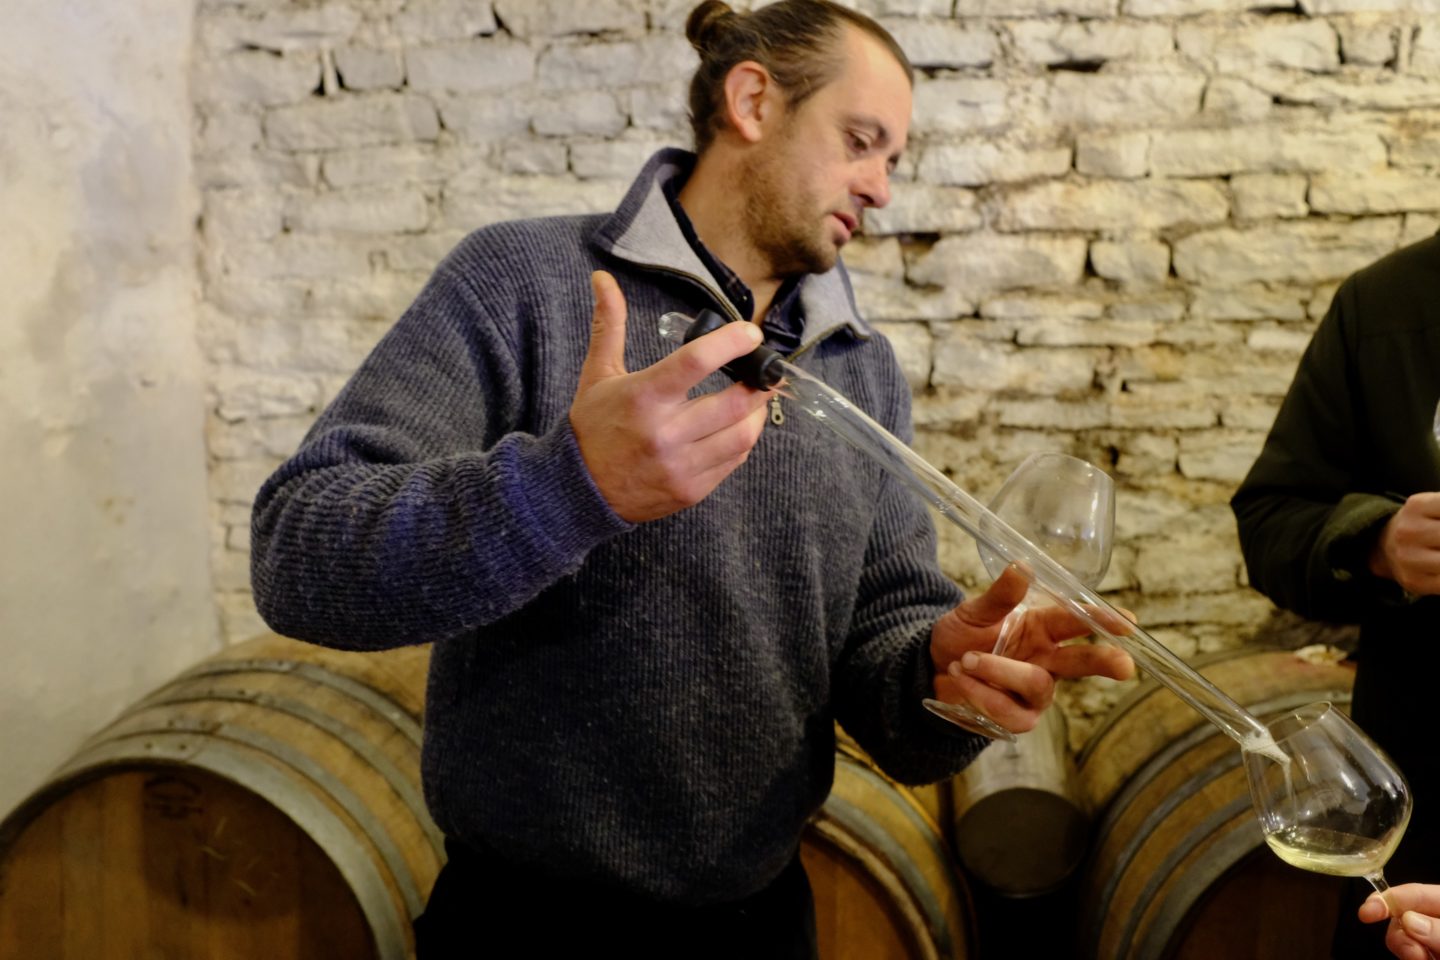 雙人舞布根地丘紅酒 Coteaux Bourguignons Pinot Noir 2022